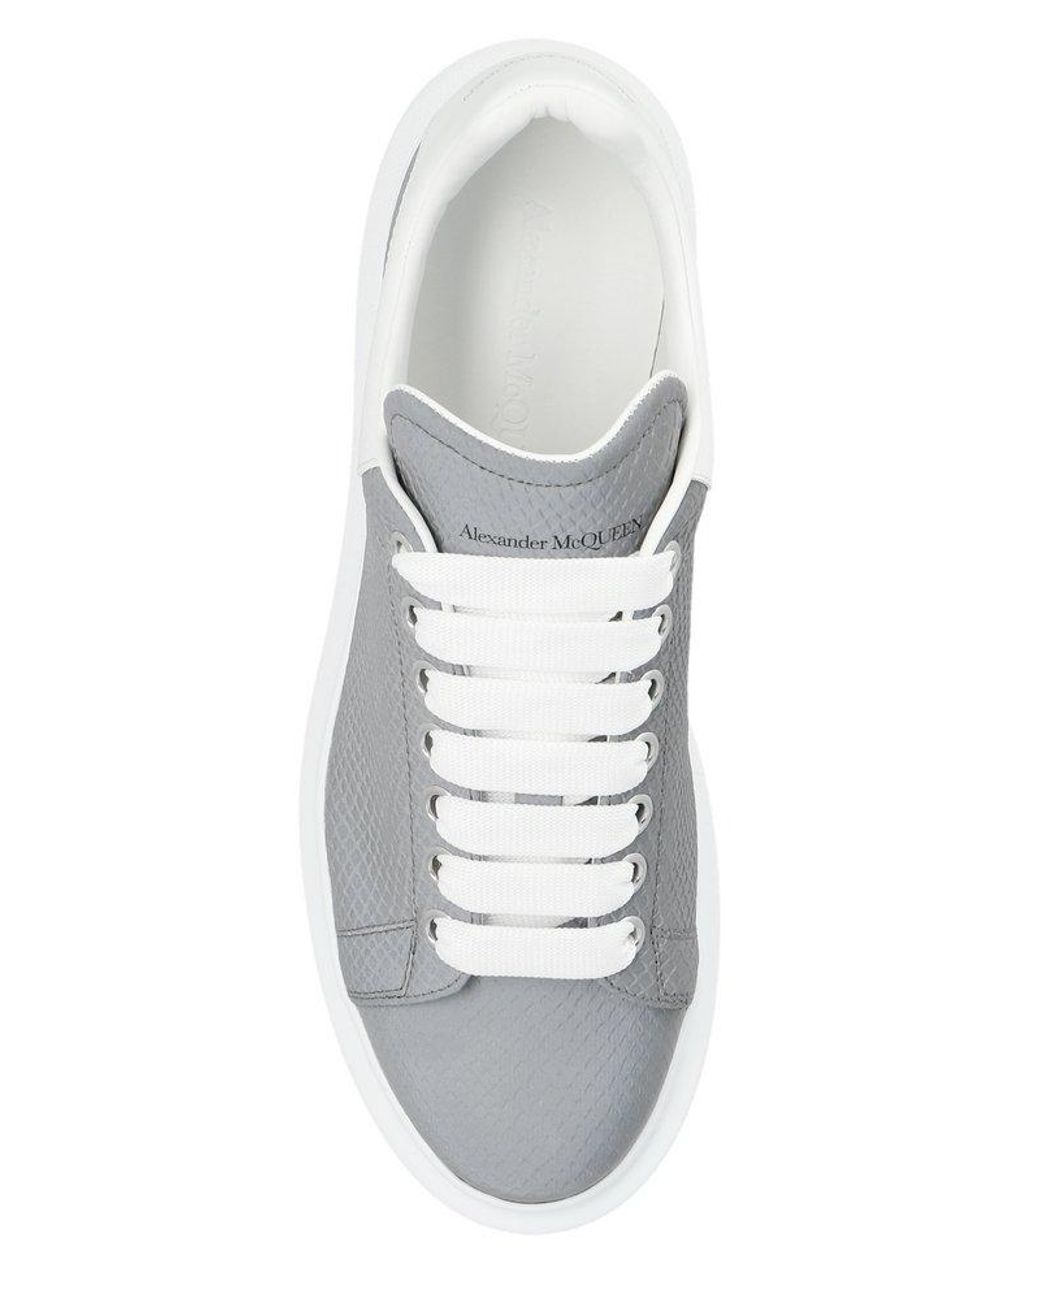 Alexander McQueen Oversized Leather Sneaker in Reflective Silver White  (W)(2022)(Sale) 🇯🇵🇰🇷🇳🇱🇺🇸🇪🇺, Women's Fashion, Footwear, Sneakers  on Carousell